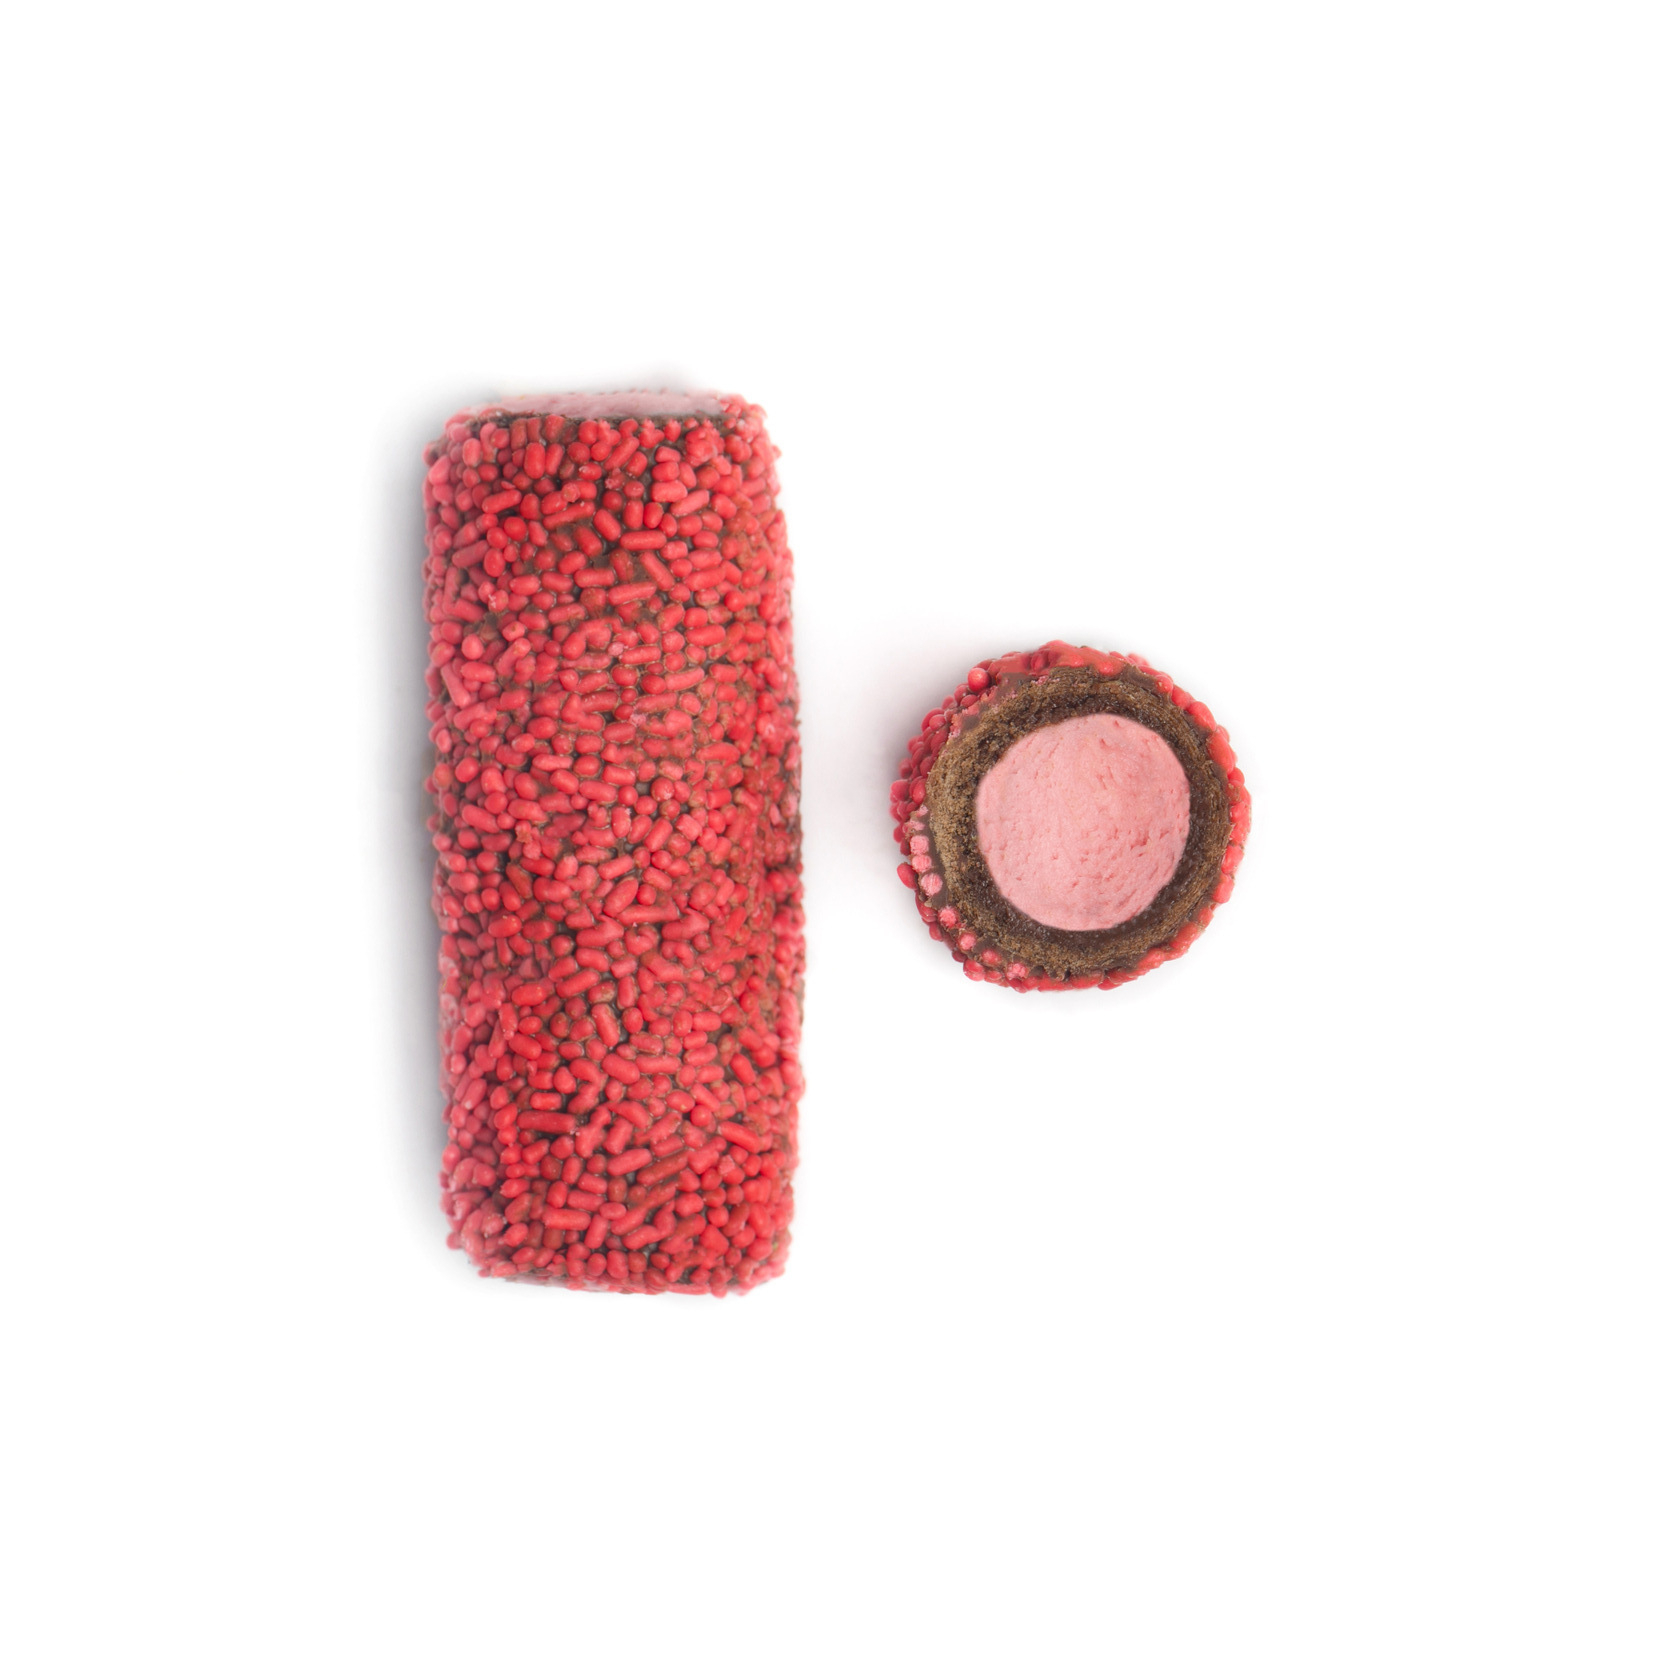 4035 - Πουράκι Φράουλας Τραγανή βάφλα με χρωματιστή τρούφα και γέμιση πραλίνας φράουλα